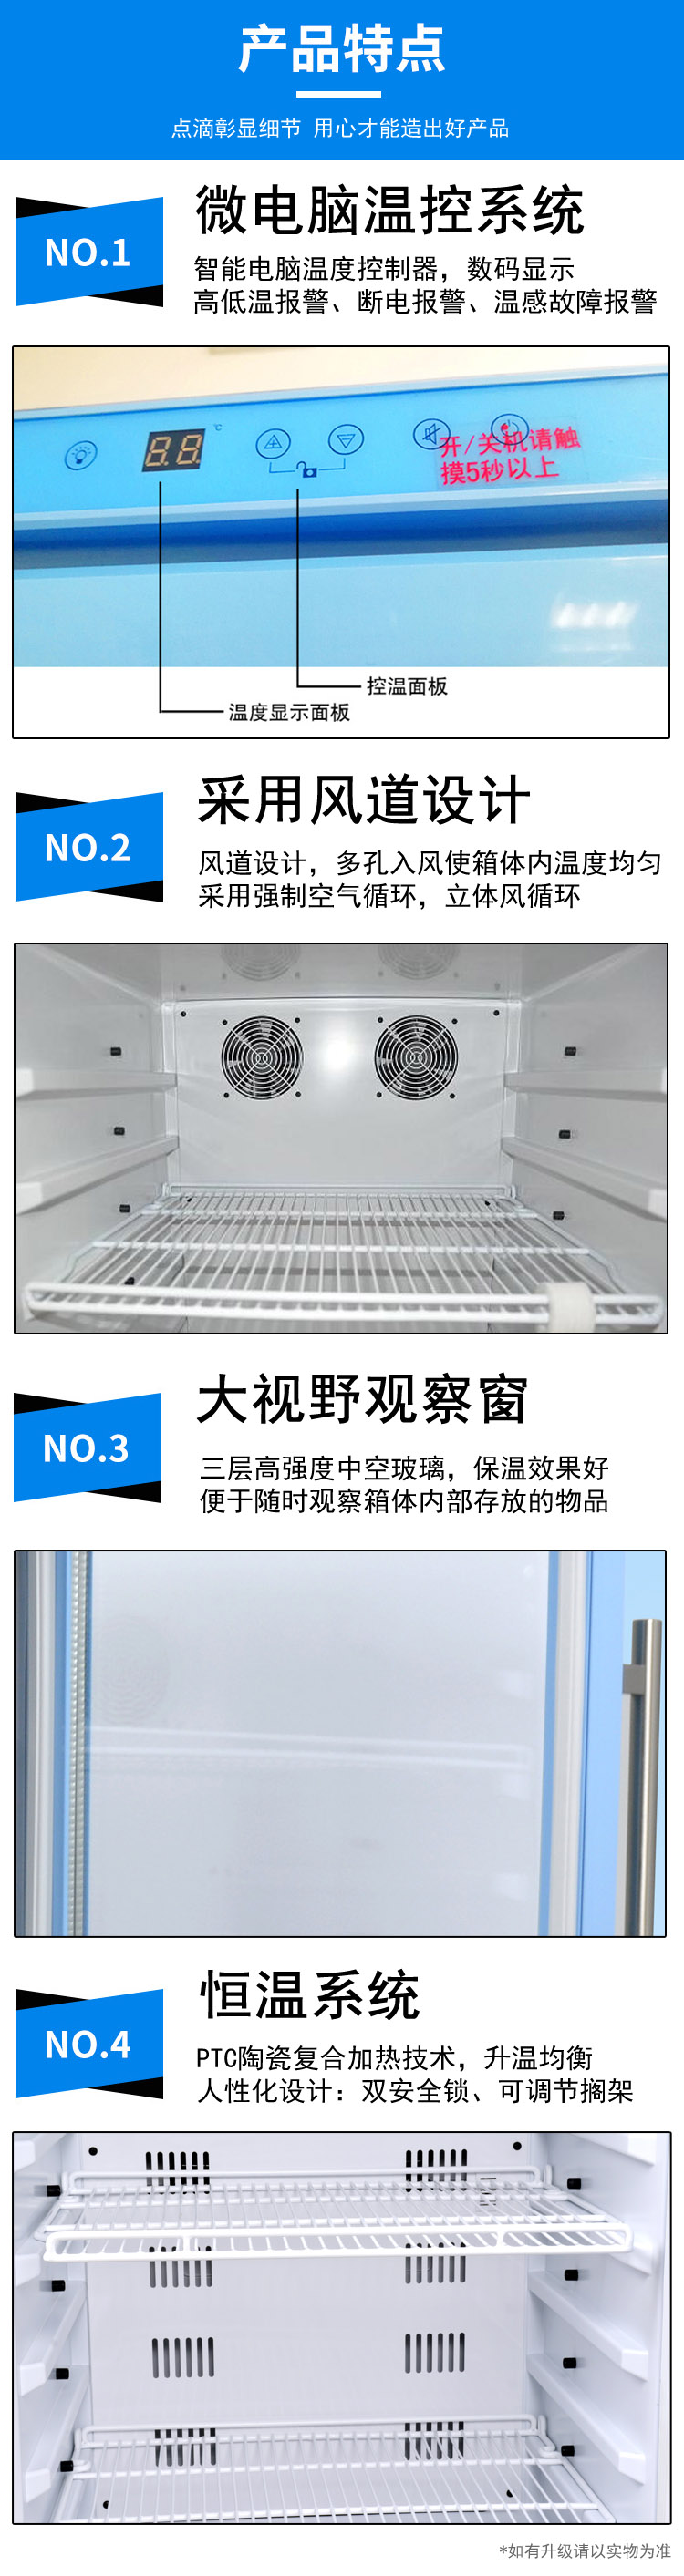 10-30℃常温冰箱药品恒温